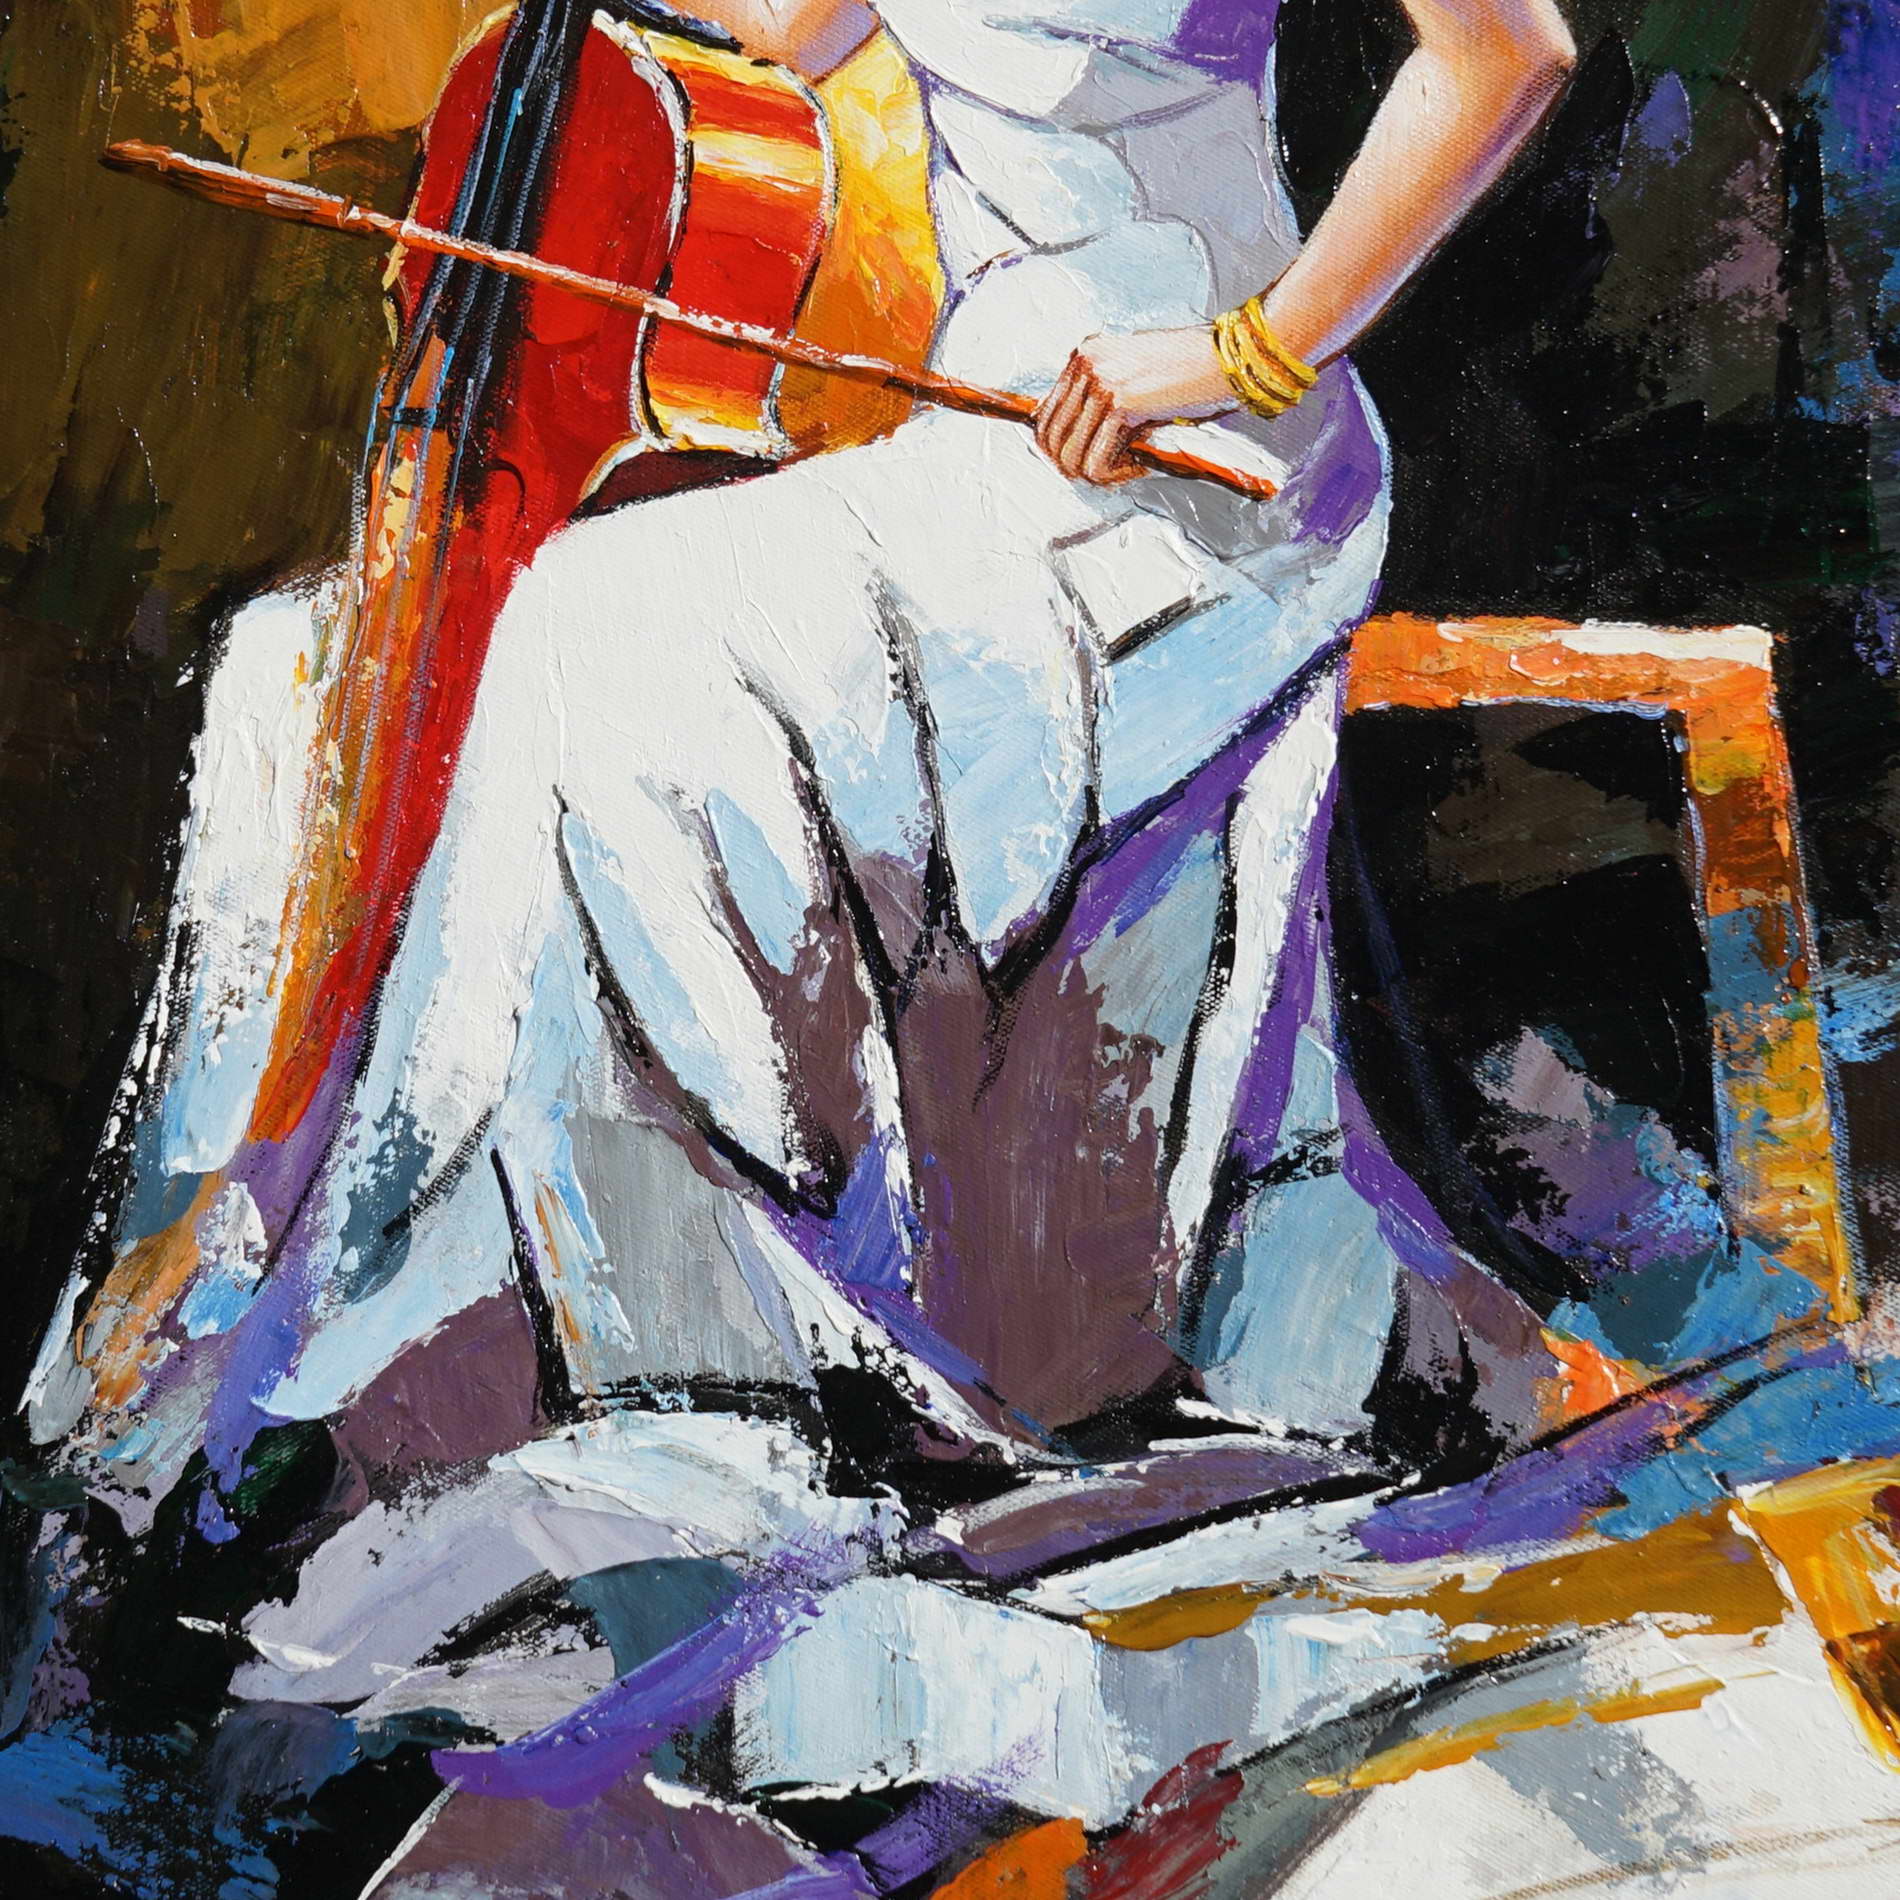 Femme peinte à la main avec violoncelle 50x70cm